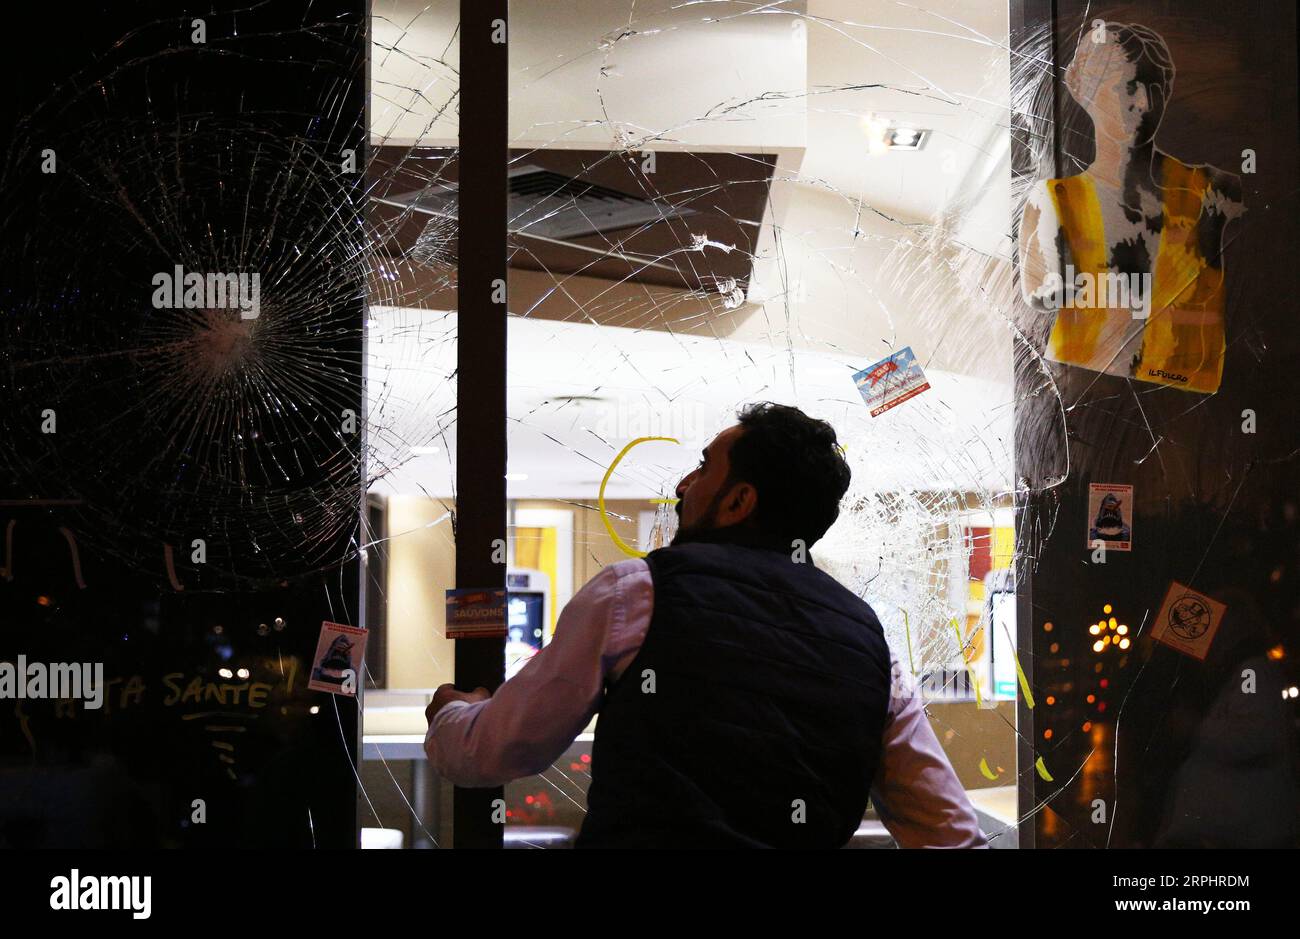 191117 -- PARIS, le 17 novembre 2019 -- Un homme regarde des fenêtres détruites par des manifestants de gilets jaunes sur la place d'Italie dans le 13e arrondissement, Paris, France, le 16 novembre 2019. La violence a éclaté samedi à Paris où le mouvement gilets jaunes a organisé une nouvelle action pour marquer son premier anniversaire dans un contexte de troubles sociaux continus sur les réformes économiques du président Emmanuel Macron. FRANCE-PARIS-GILET JAUNE ANNIVERSAIRE GaoxJing PUBLICATIONxNOTxINxCHN Banque D'Images